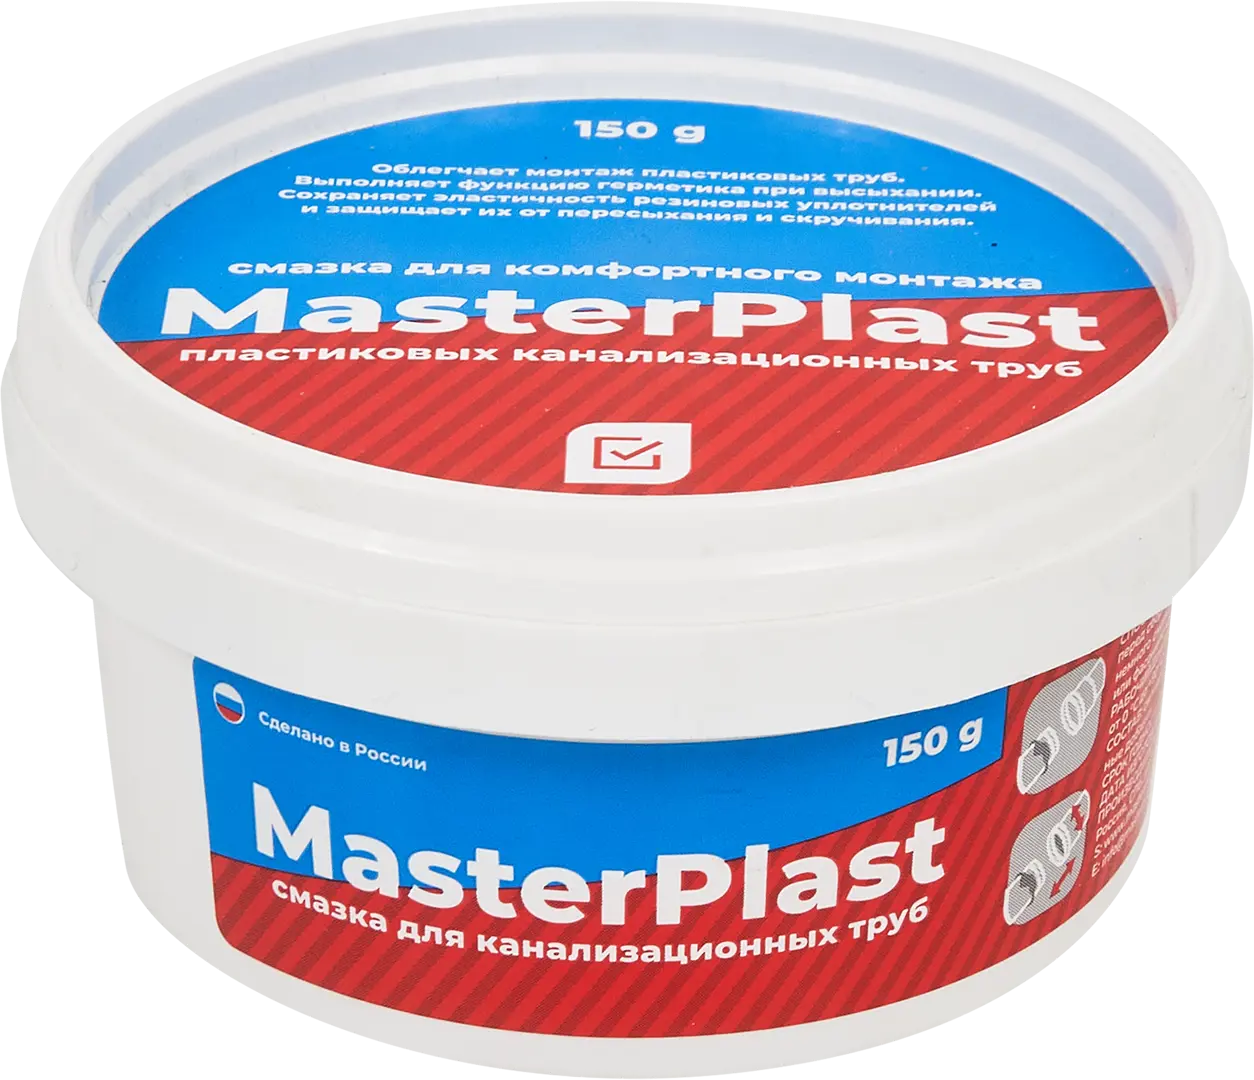 Смазка для канализационных труб Masterplast 150 г смазка для канализационных труб masterprof